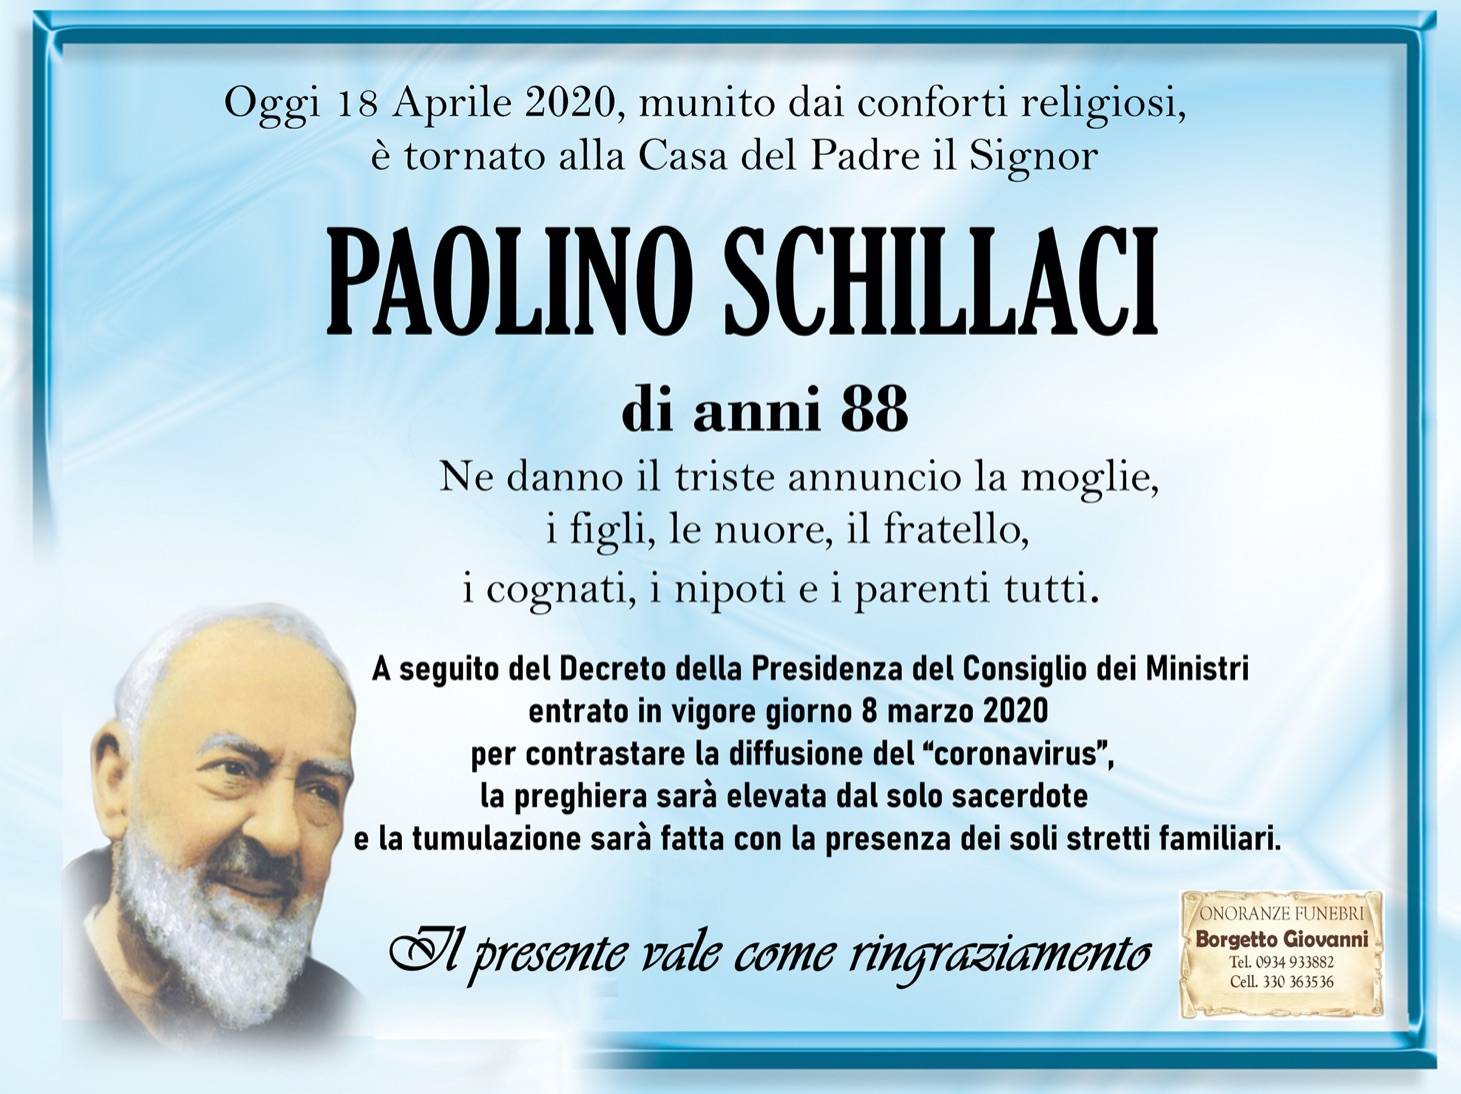 Paolino Schillaci